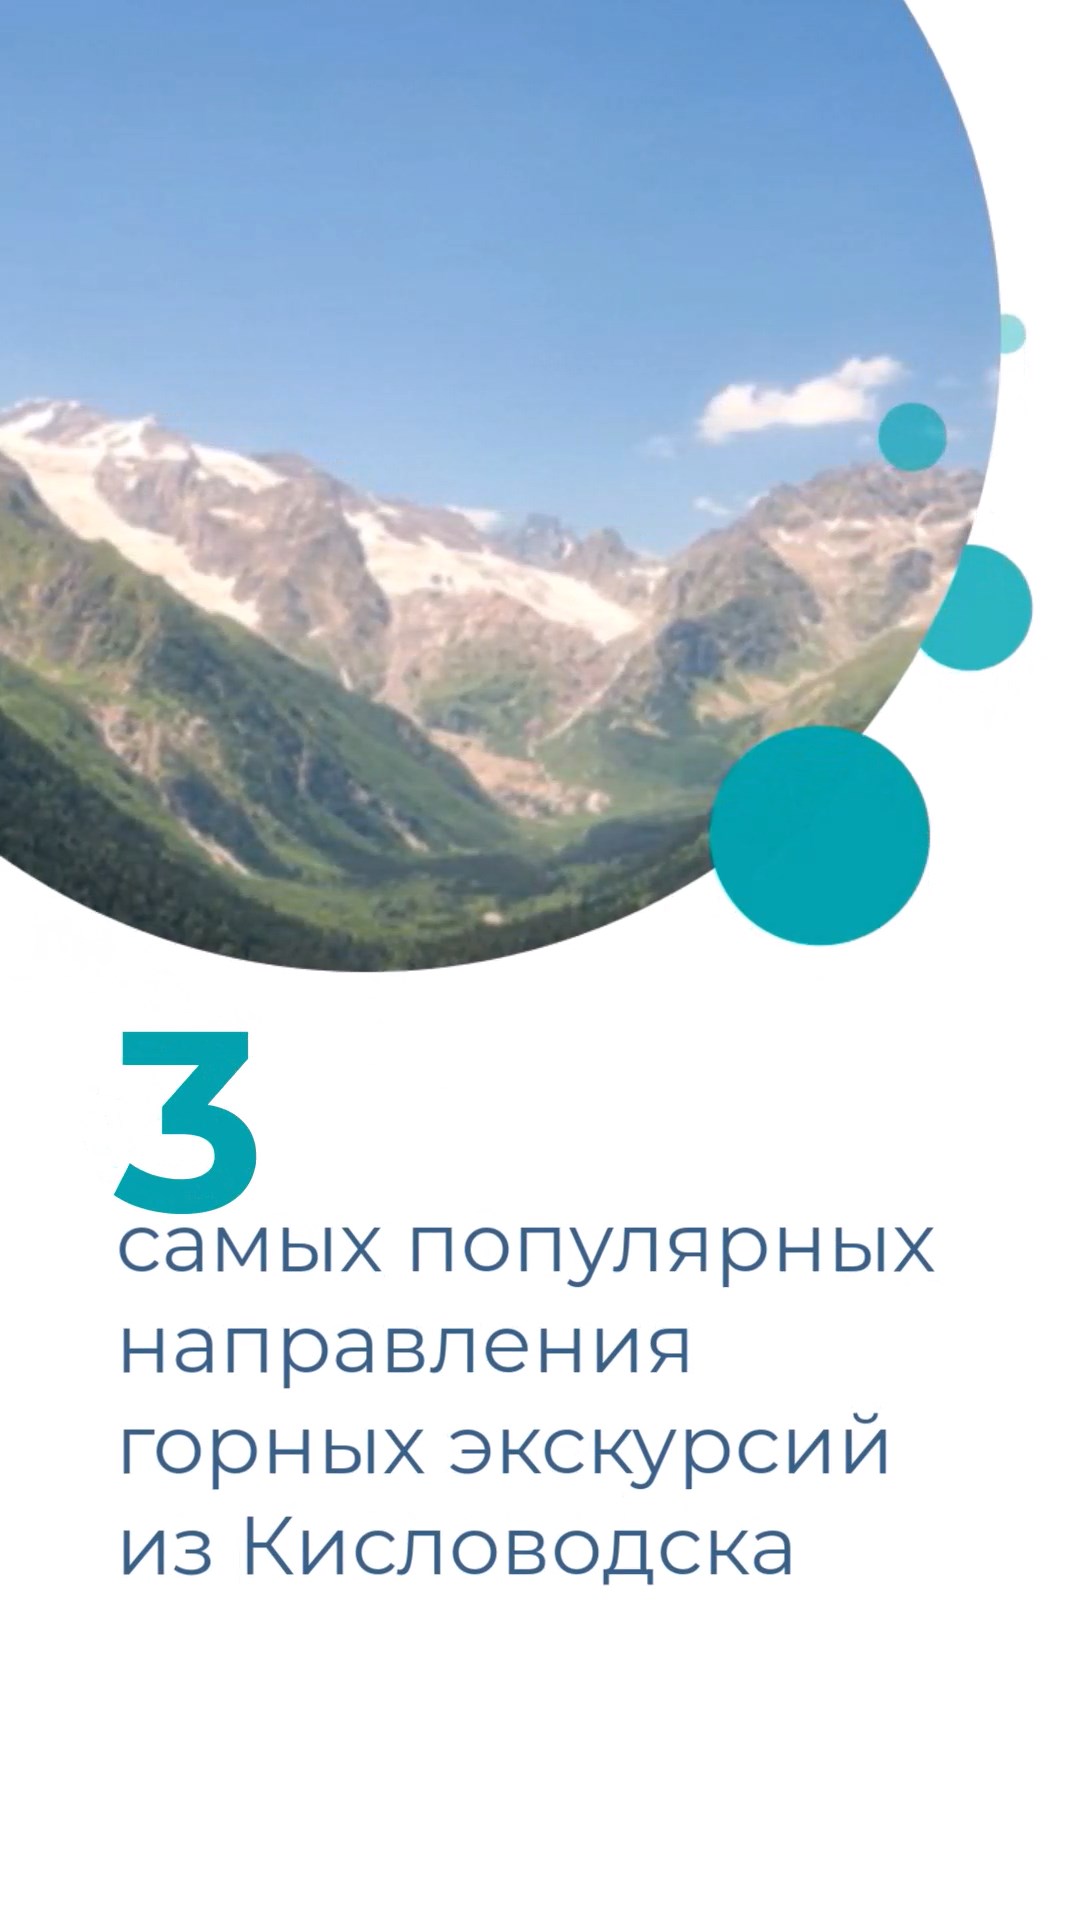 3 самых популярных направления горных экскурсий из Кисловодска